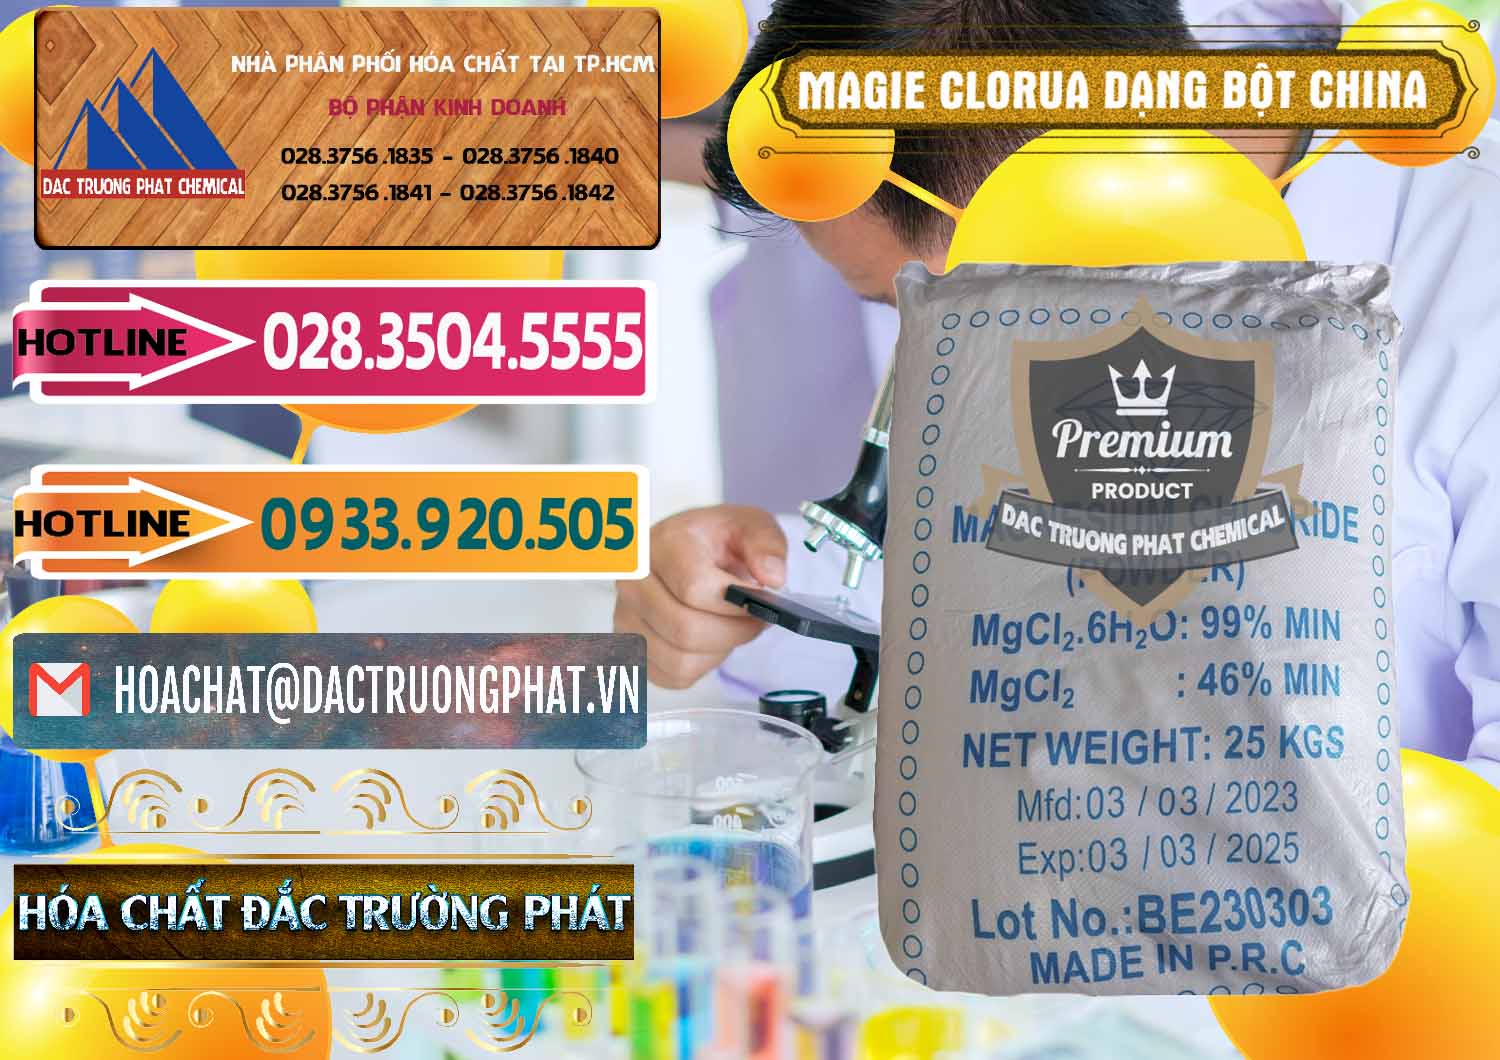 Đơn vị chuyên bán & cung cấp Magie Clorua – MGCL2 96% Dạng Bột Logo Kim Cương Trung Quốc China - 0387 - Đơn vị nhập khẩu & cung cấp hóa chất tại TP.HCM - dactruongphat.vn